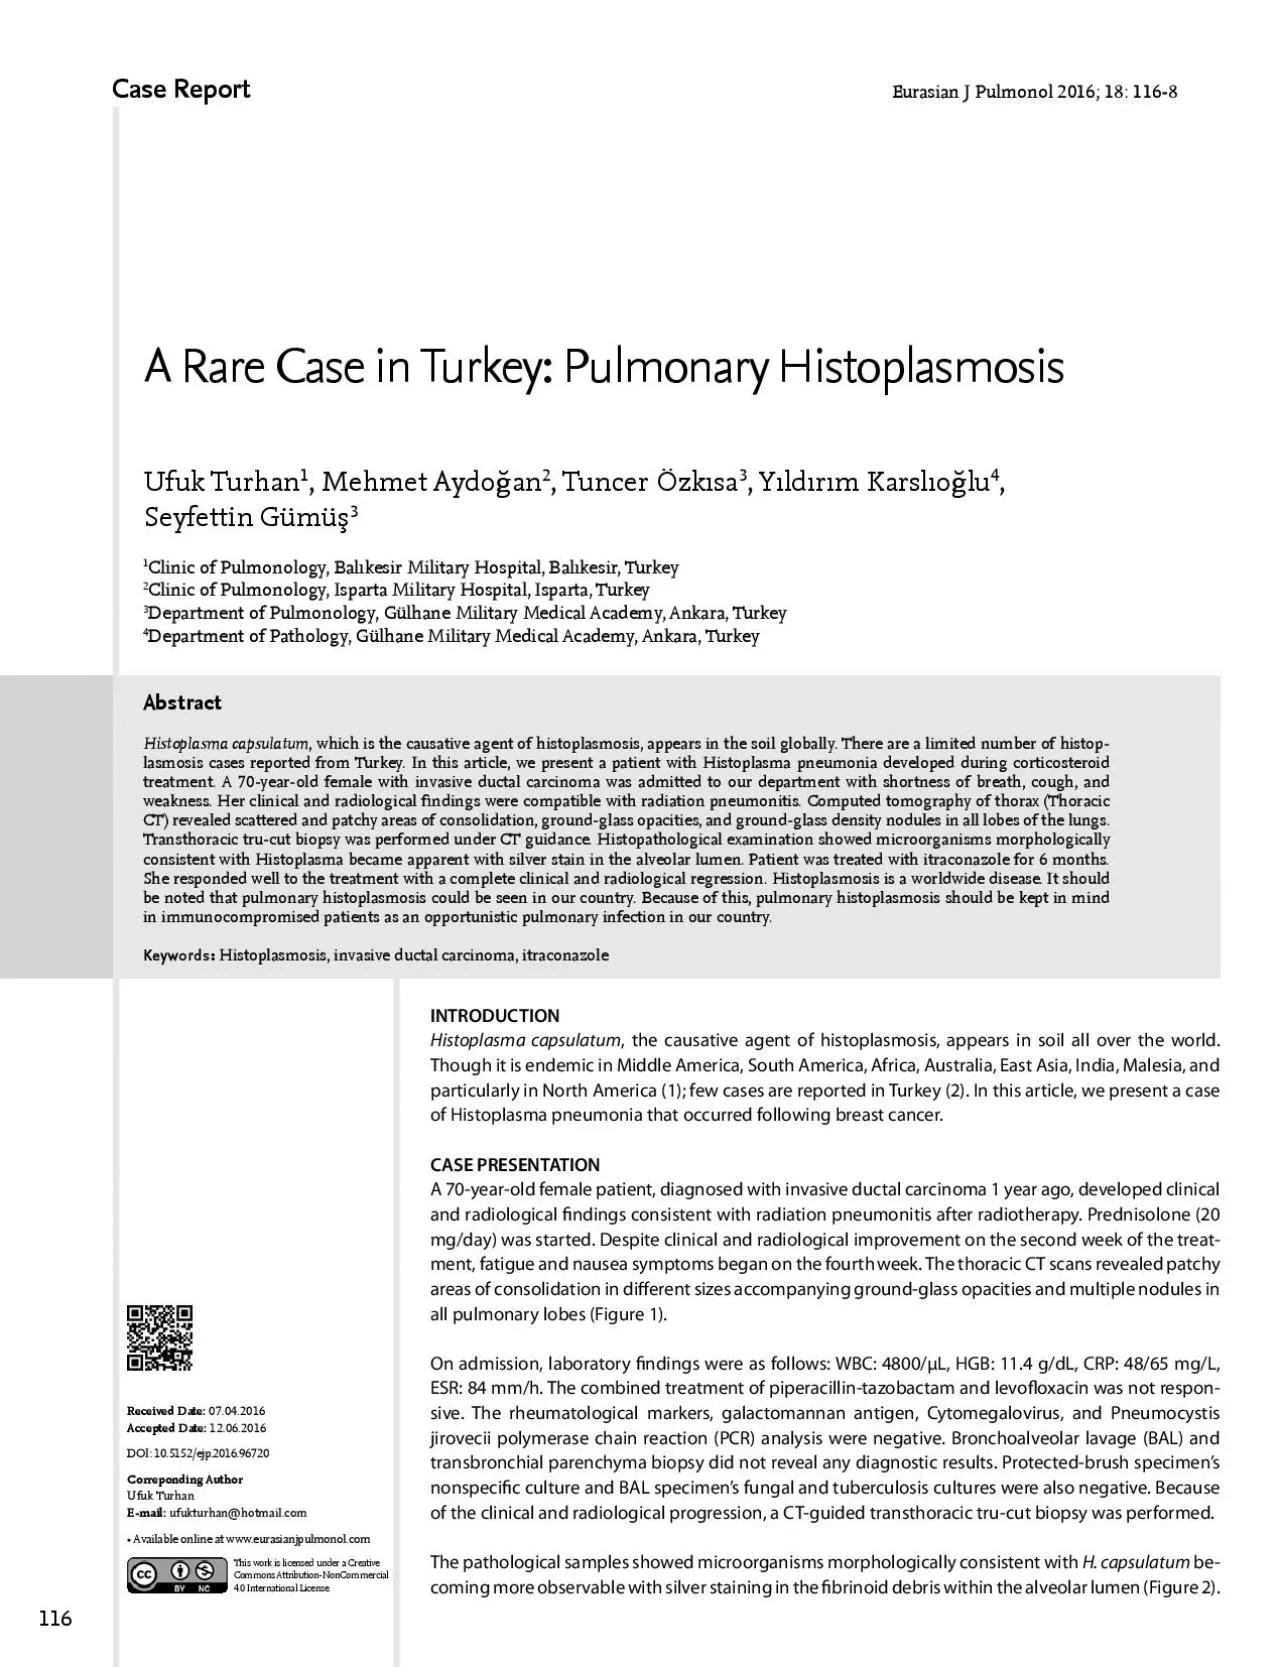 INTRODUCTIONHistoplasma capsulatum the causative agent of histoplasmo